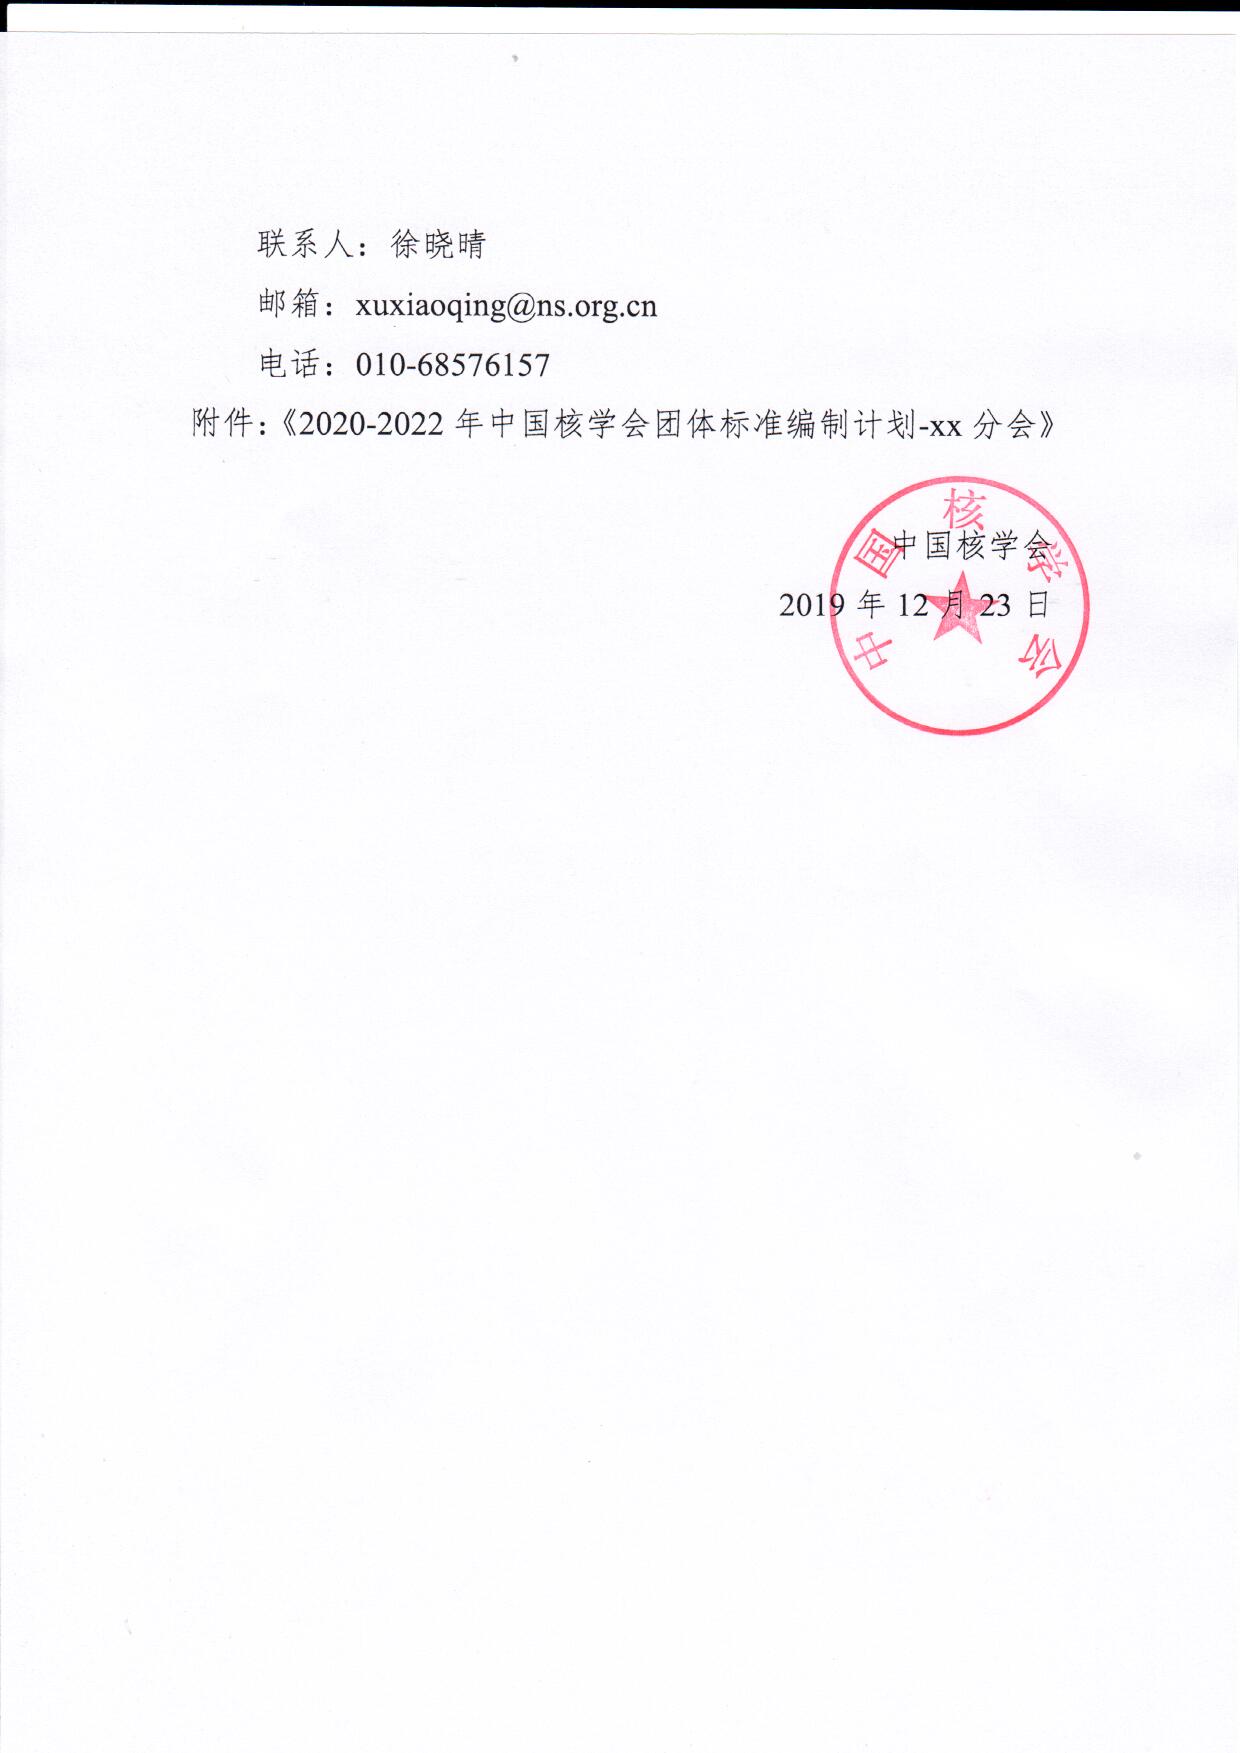 关于报送中国核学会团体标准2020-2022年编制计划的通知_页面_2.jpg